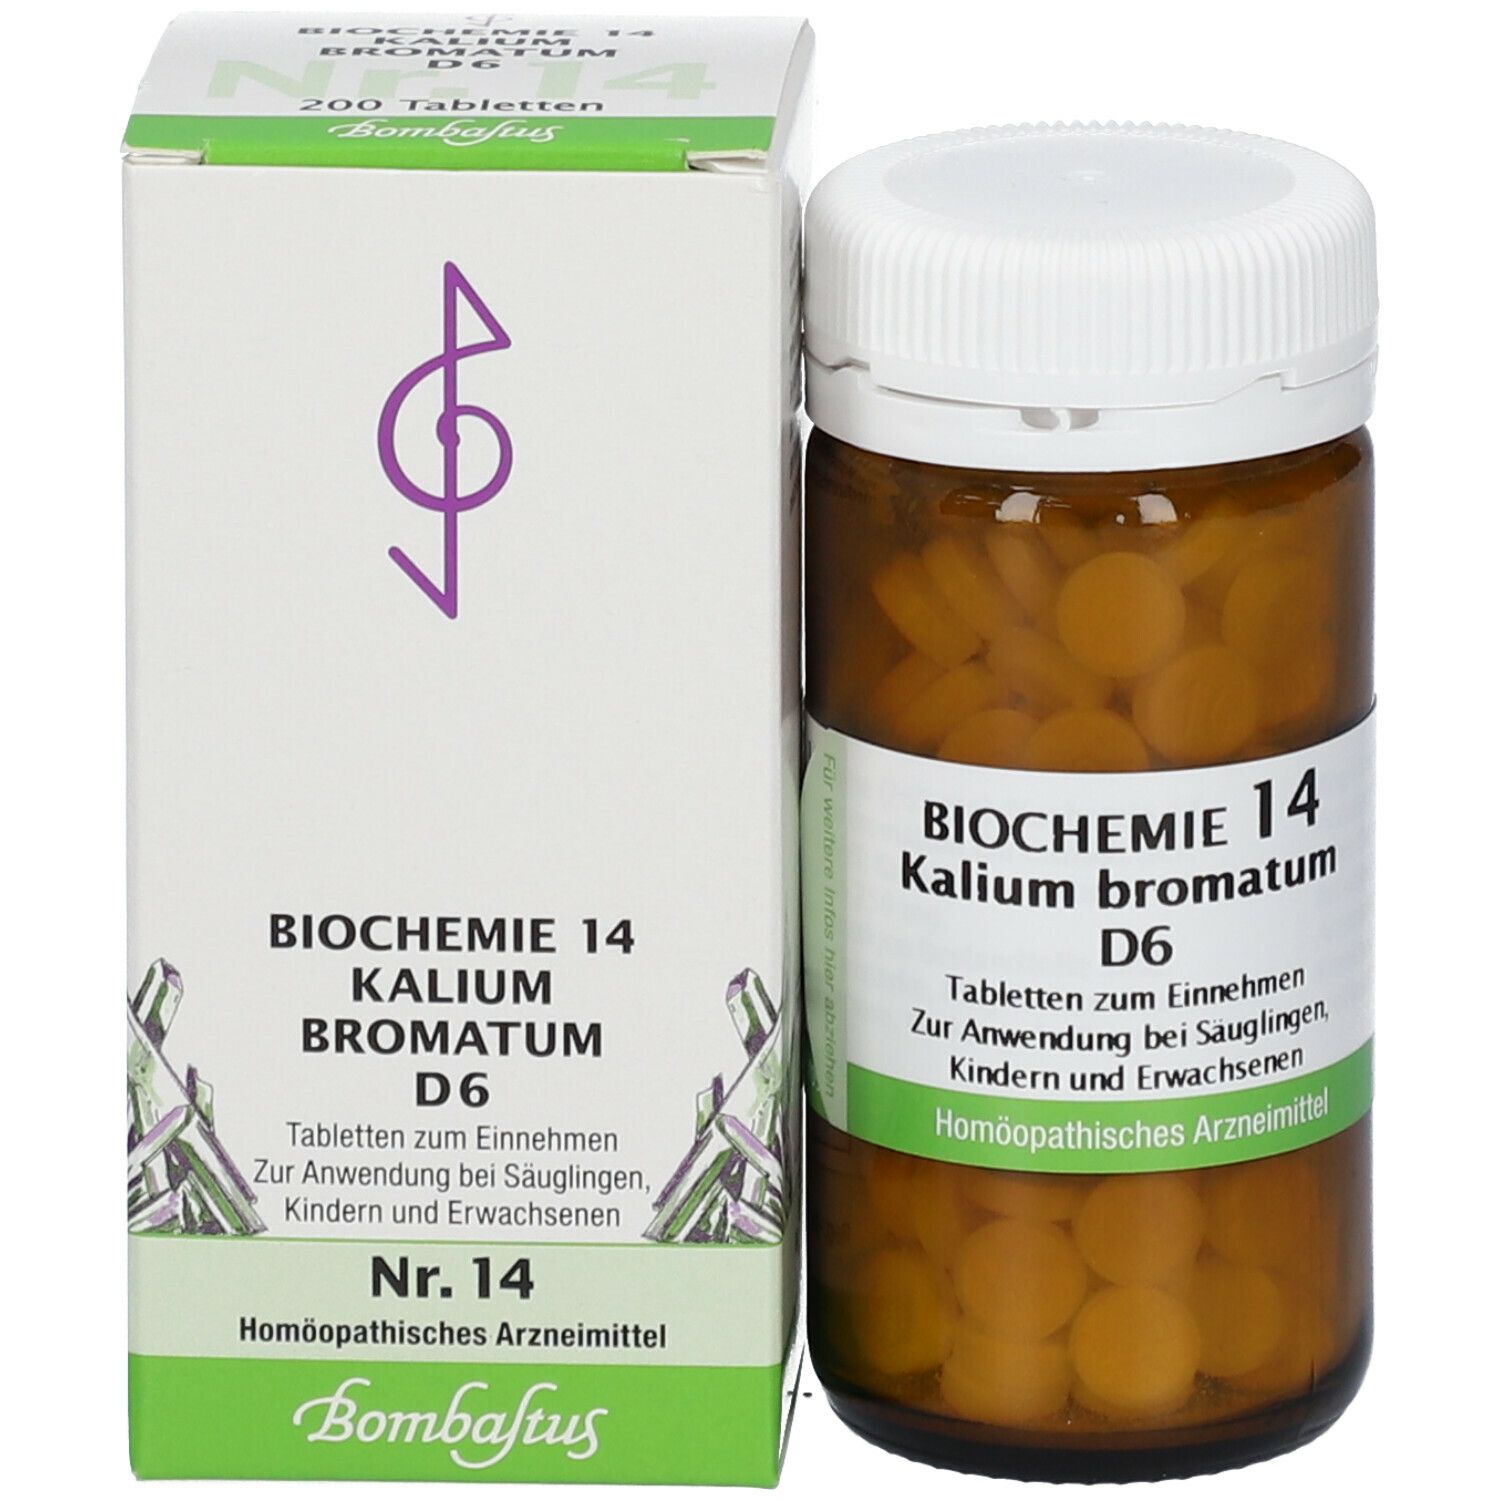 BIOCHEMIE 14 Kalium bromatum D 6